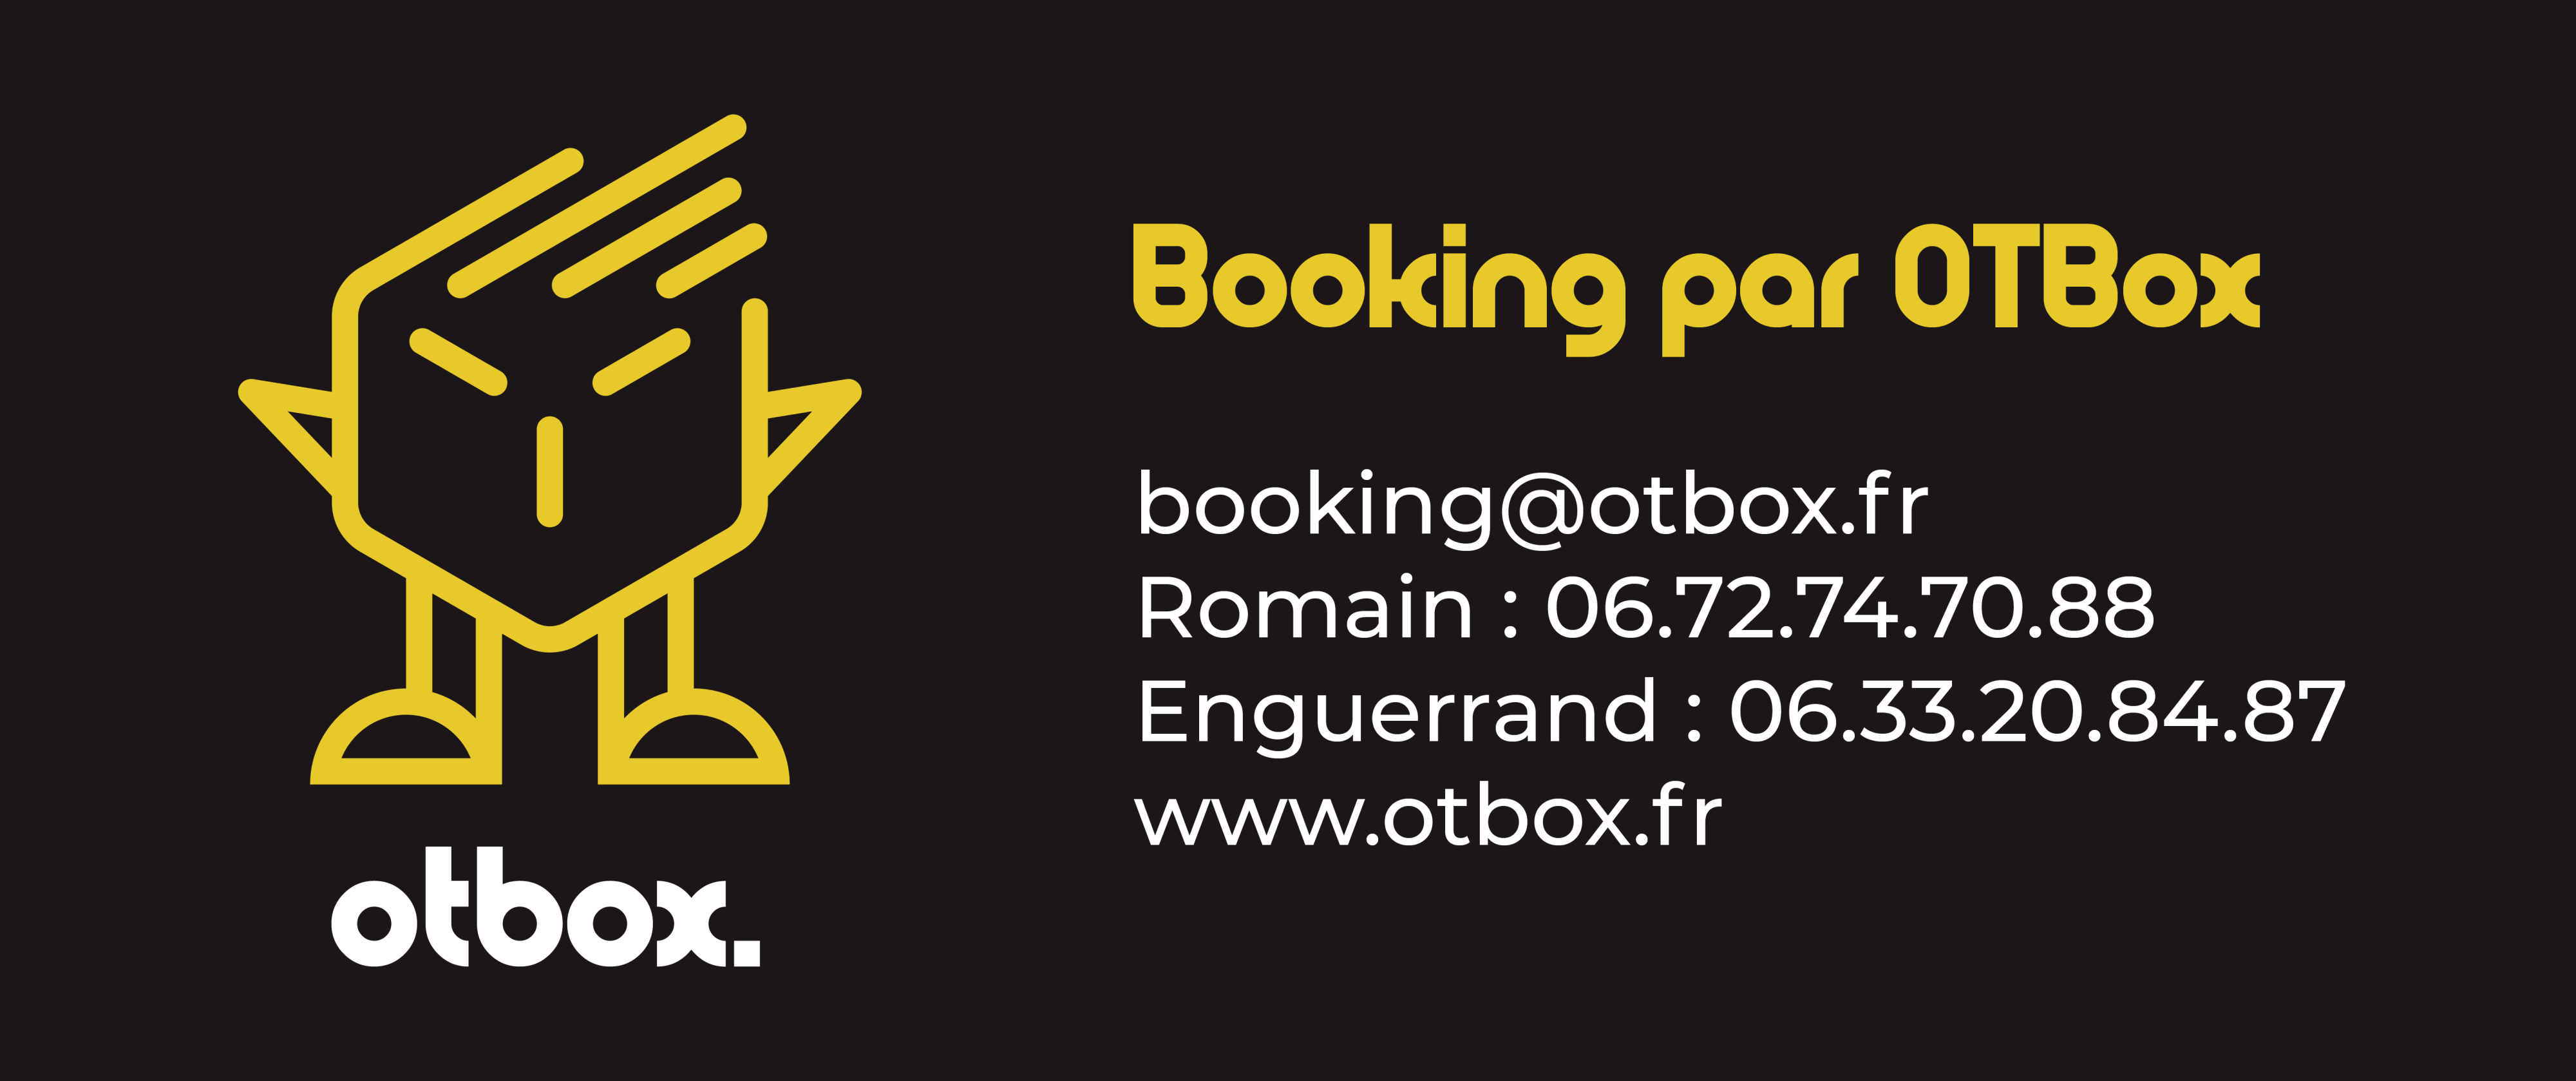 La Belle Escampette - Booking par OTBox